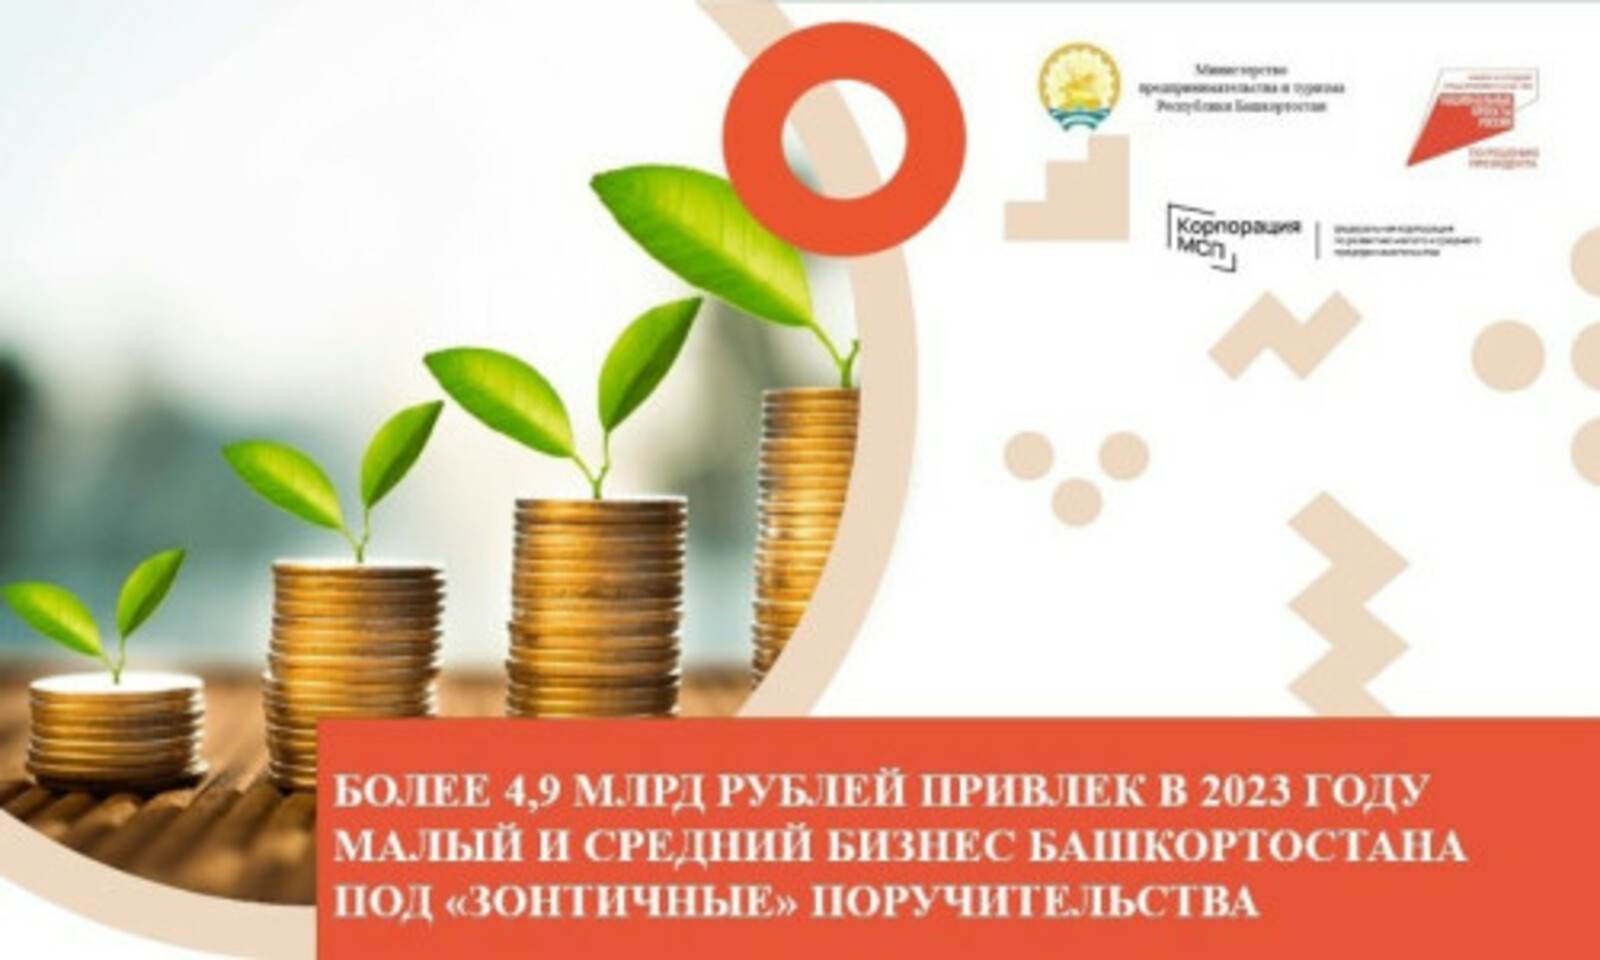 Малый и средний бизнес Башкирии привлек в 2023 году свыше 4,9 млрд рублей кредитов благодаря  "зонтичным" поручительствам